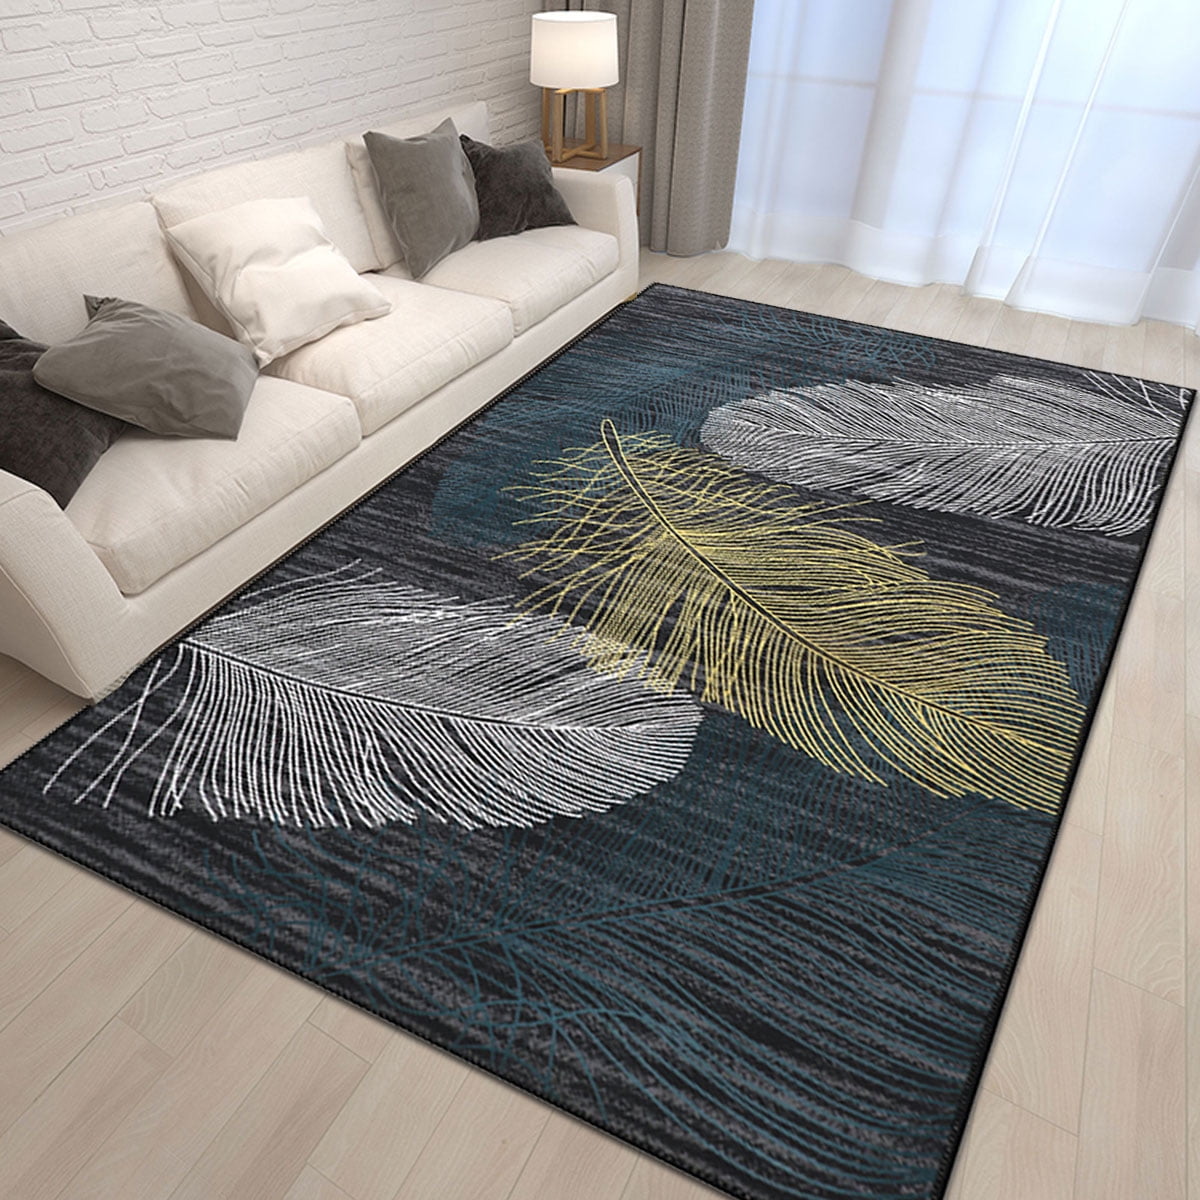 Area Rug Kitchen Floor Mat Bedroom Non-Slip Hallway Runner Carpet Livin 